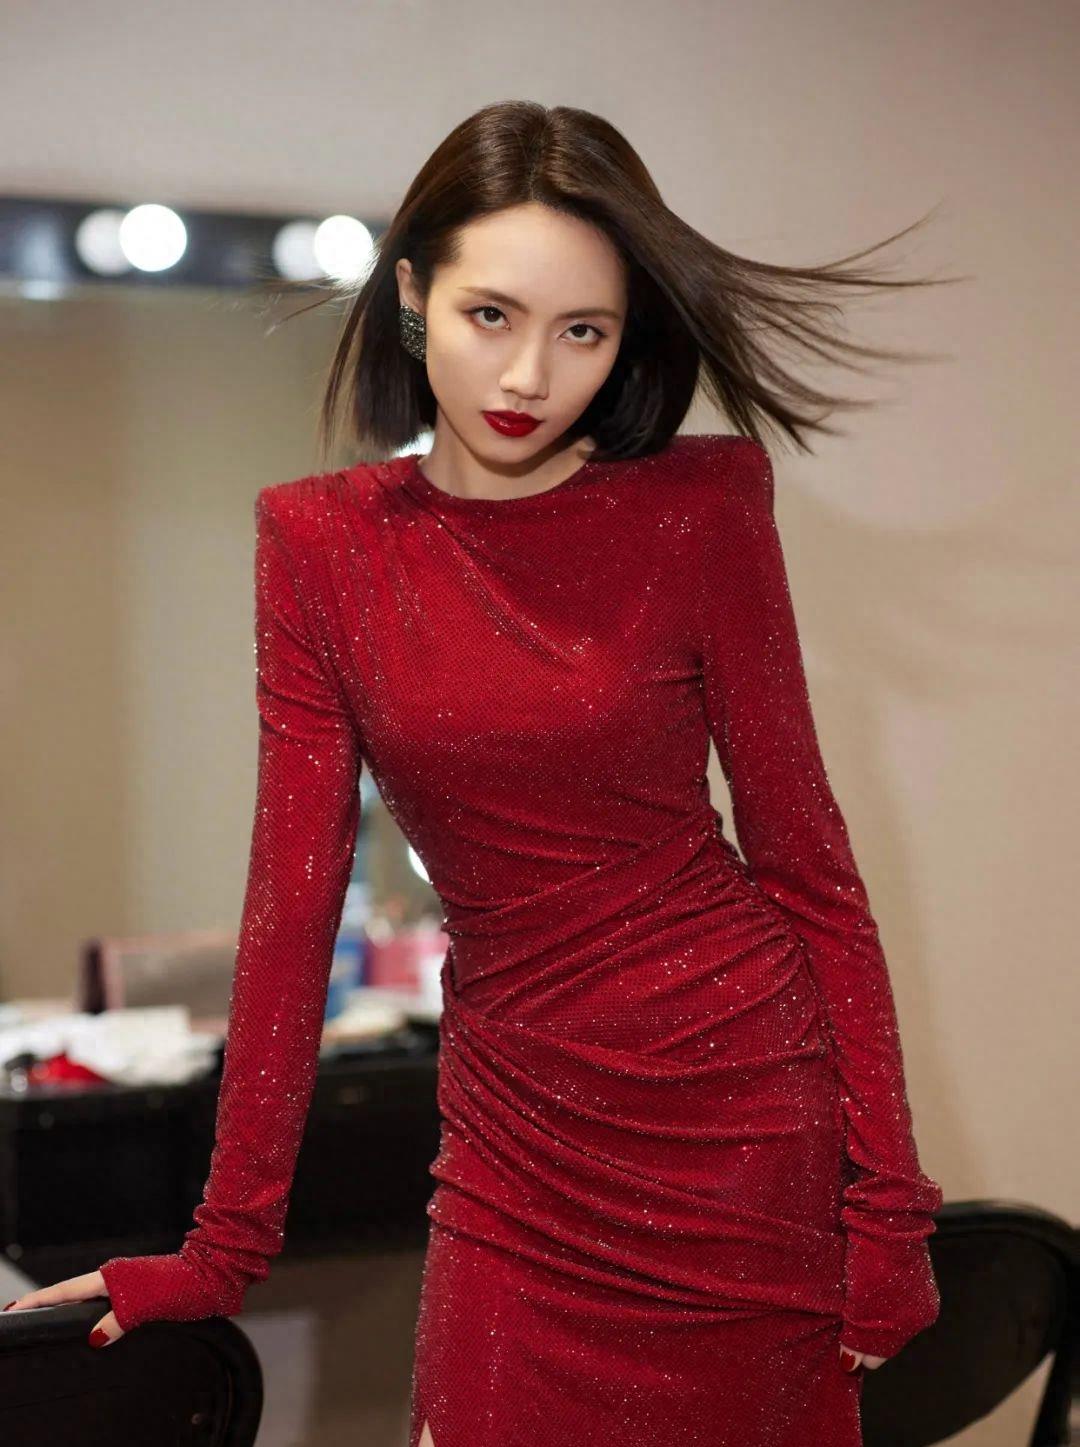 刘惜君的身材如此温暖,红色高开衩裙,尽显她的迷人风情,方肩大长腿